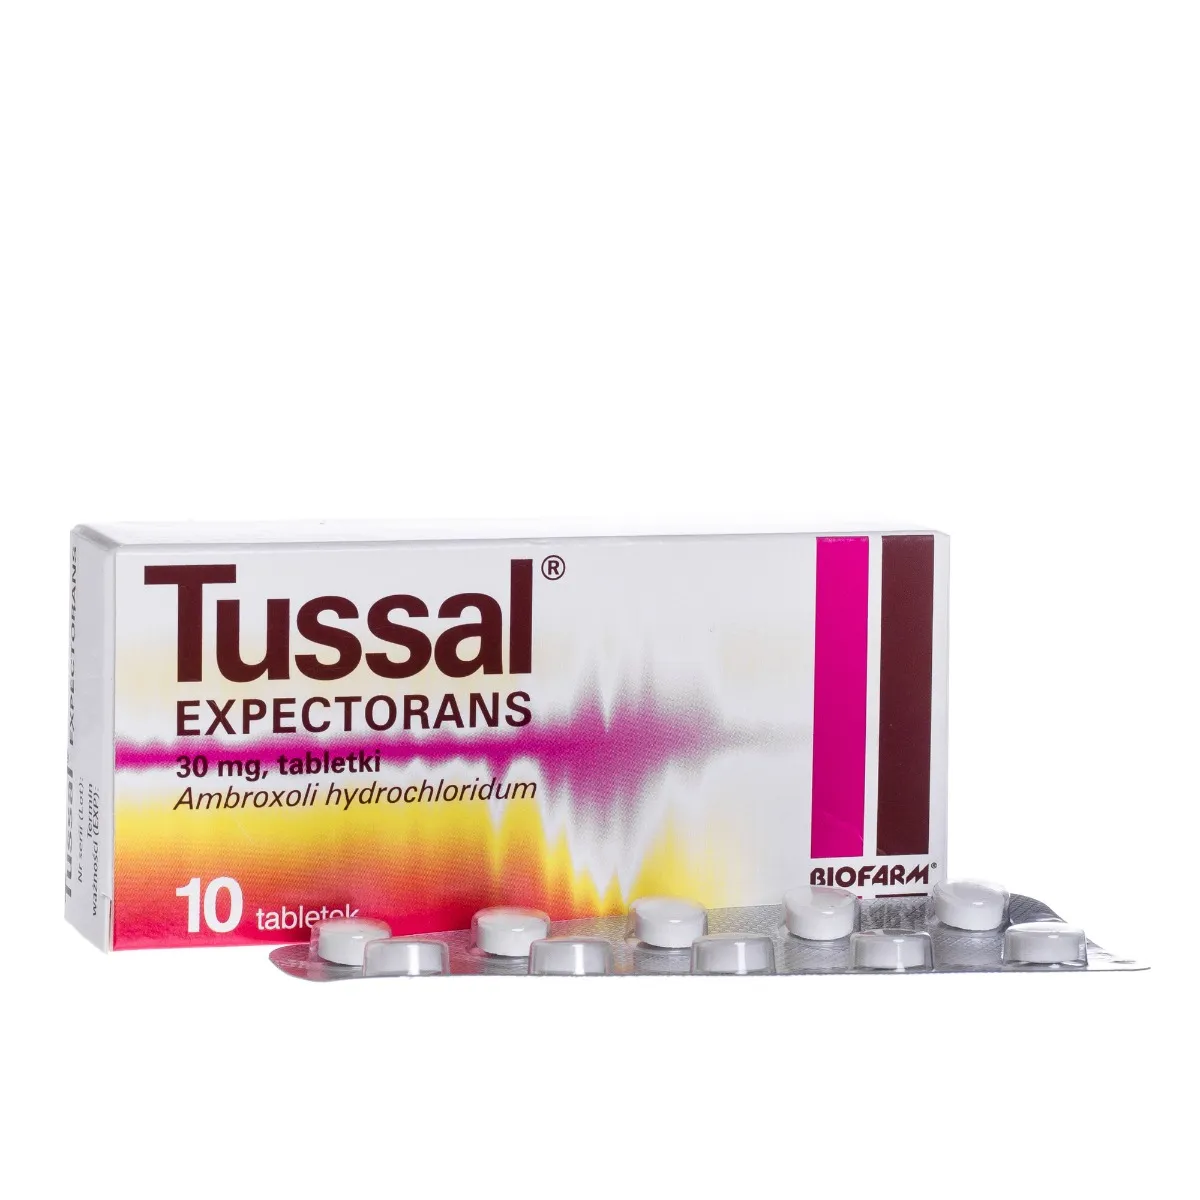 Tussal Expectorans, lek ułatwiający odkrztuszanie, 10 tabletek. Data ważności 2022-05-31